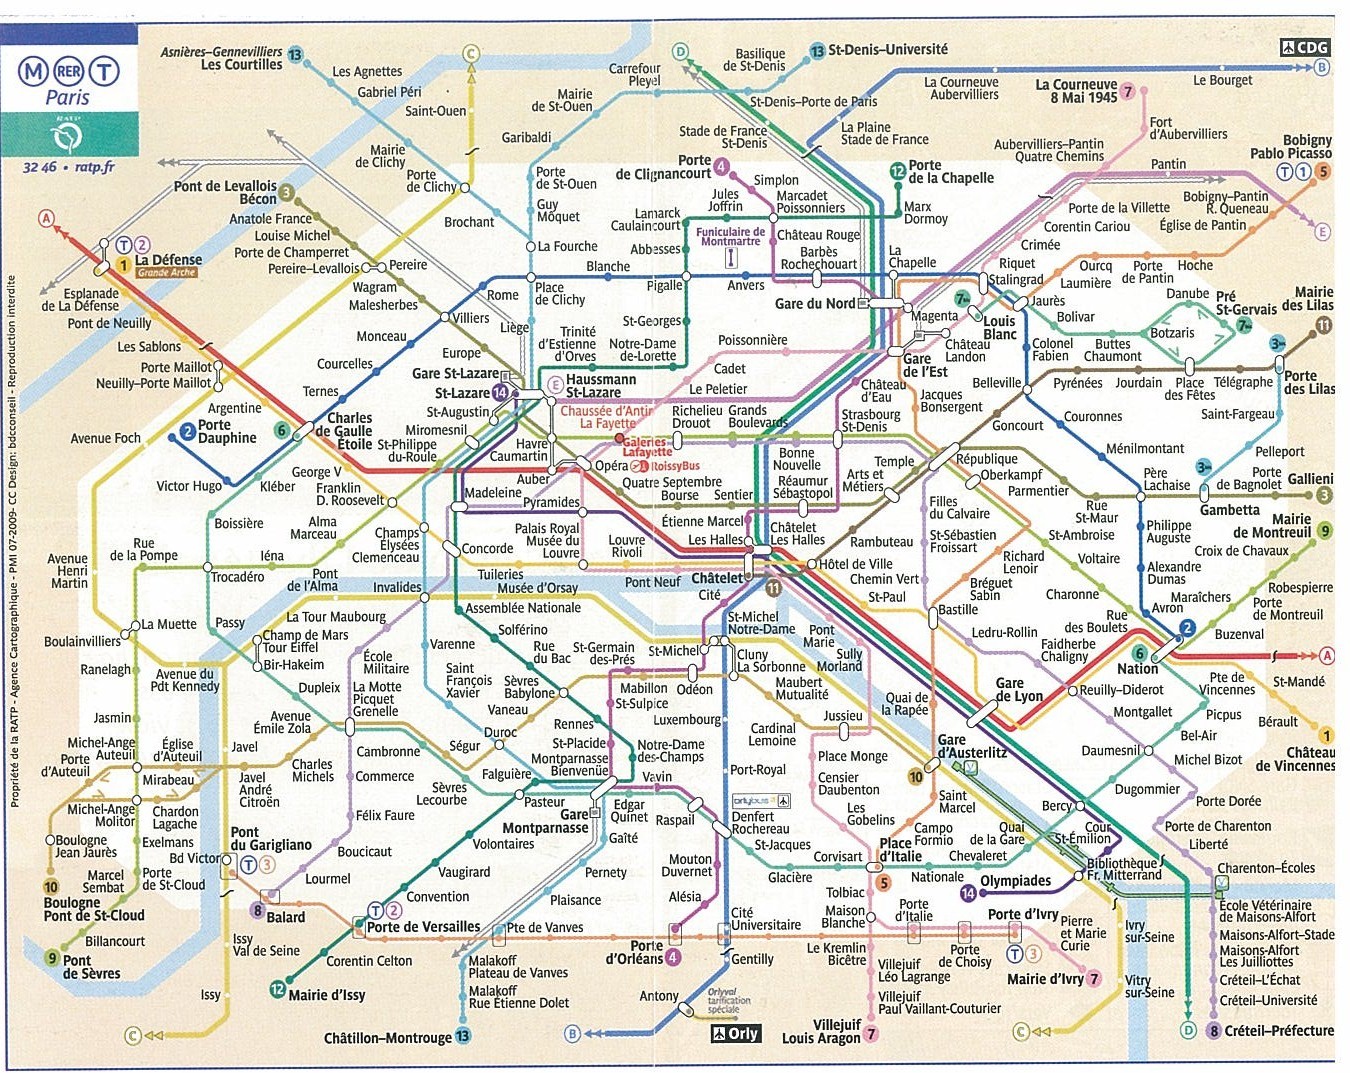 艾瑞克的旅行空間: 巴黎地鐵影像